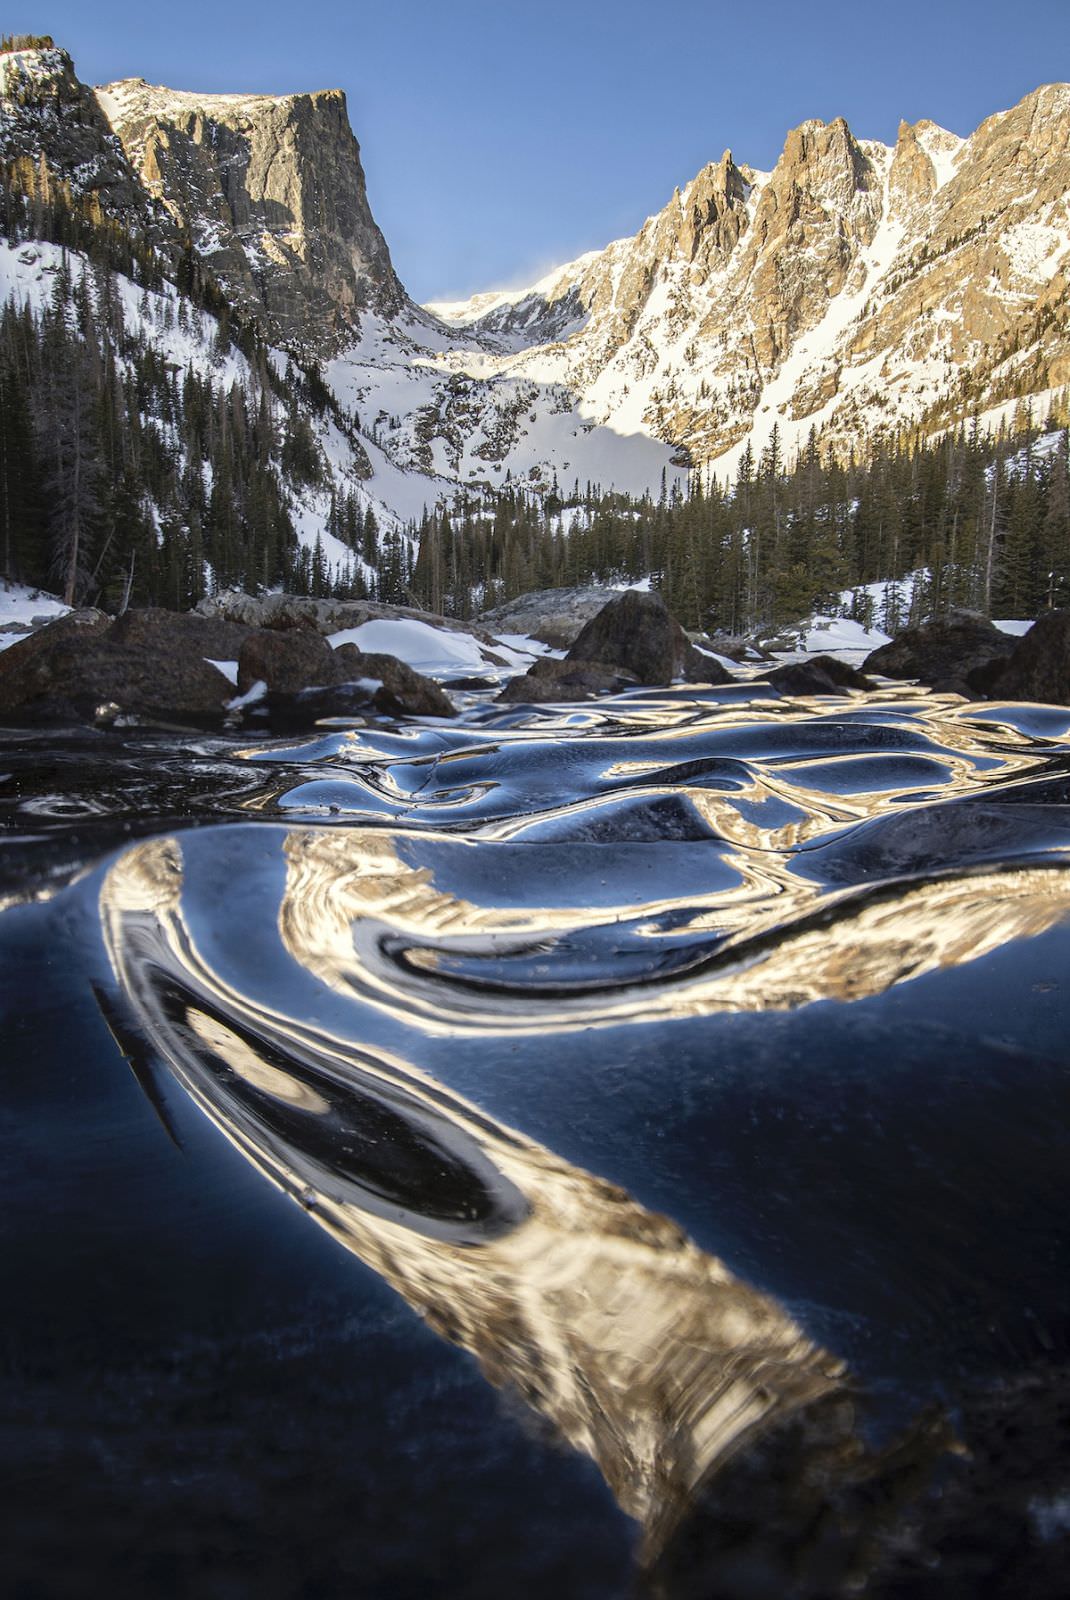 نمای طبیعت و دریاچه کوهستانی در کلرادو عکاس اریک گروس